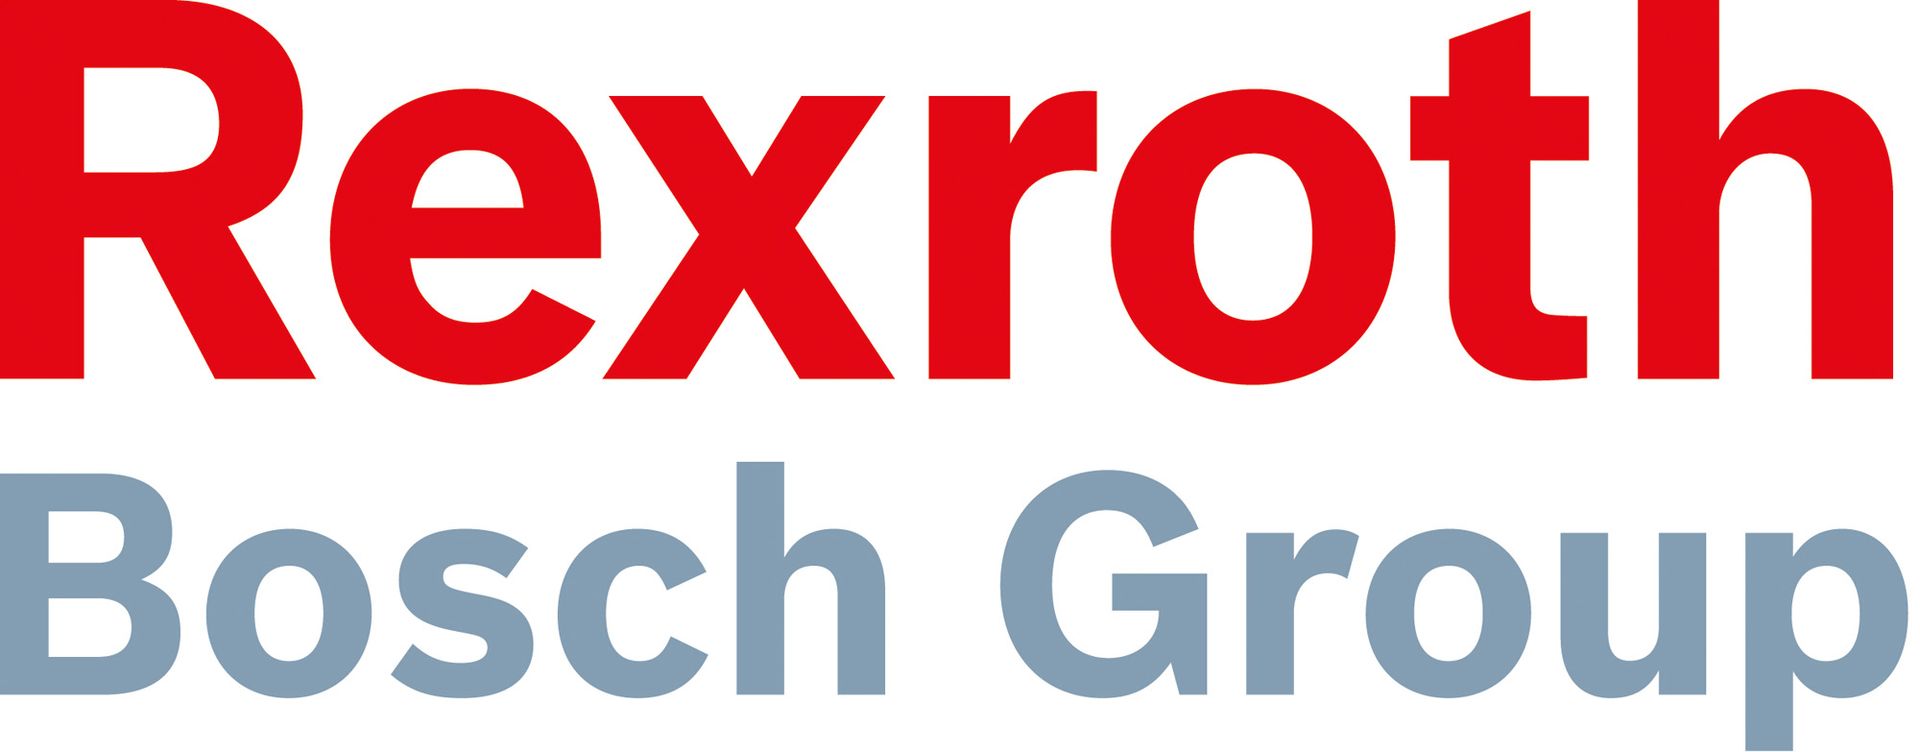 Гидроя - ремонт гидронасосов Bosch Rexroth